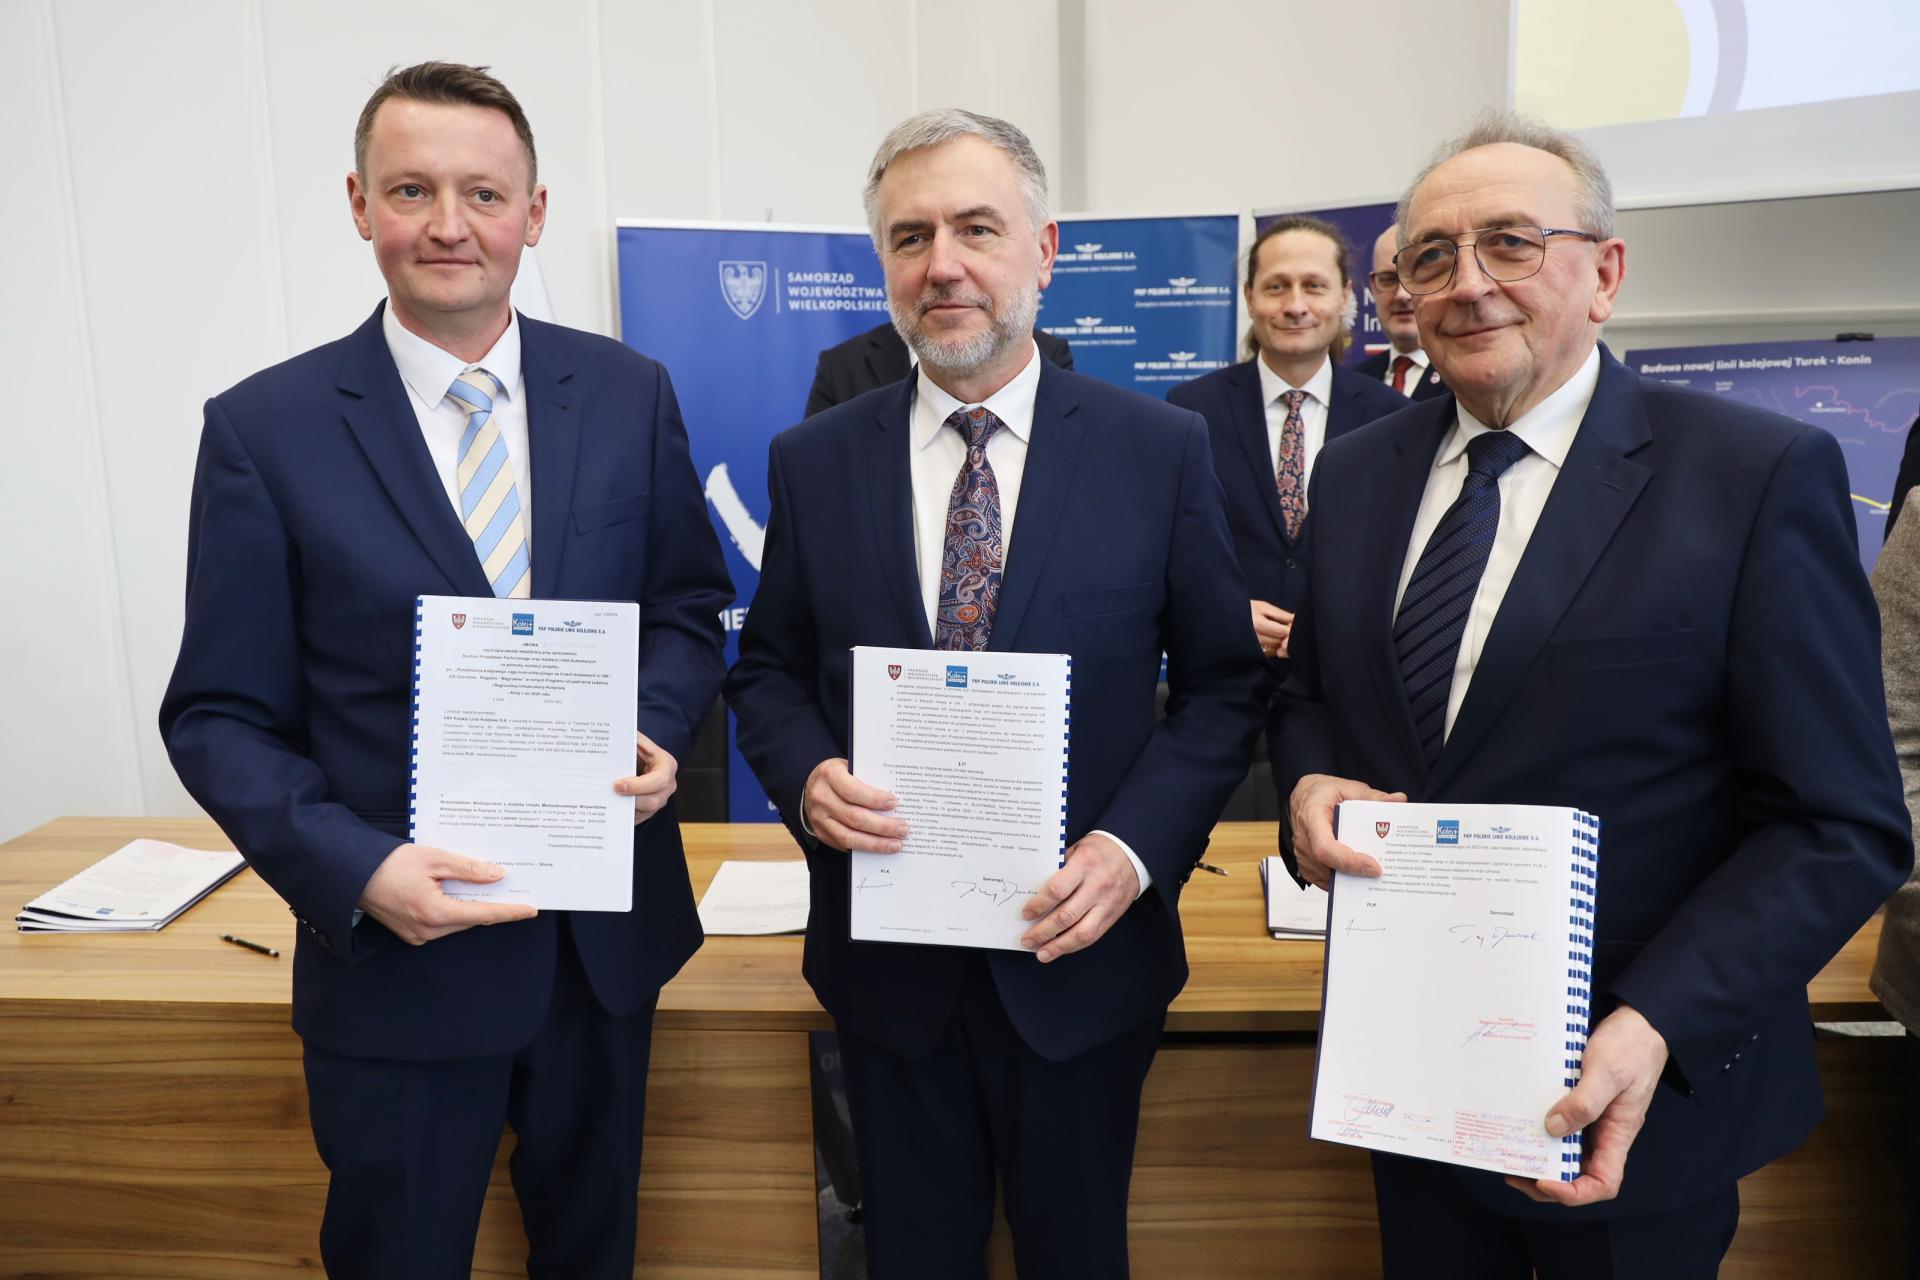 Marszałkowie podpisali umowy z PKP PLK warte 2,2 mld zł na inwestycje kolejowe w Wielkopolsce  - zobacz więcej